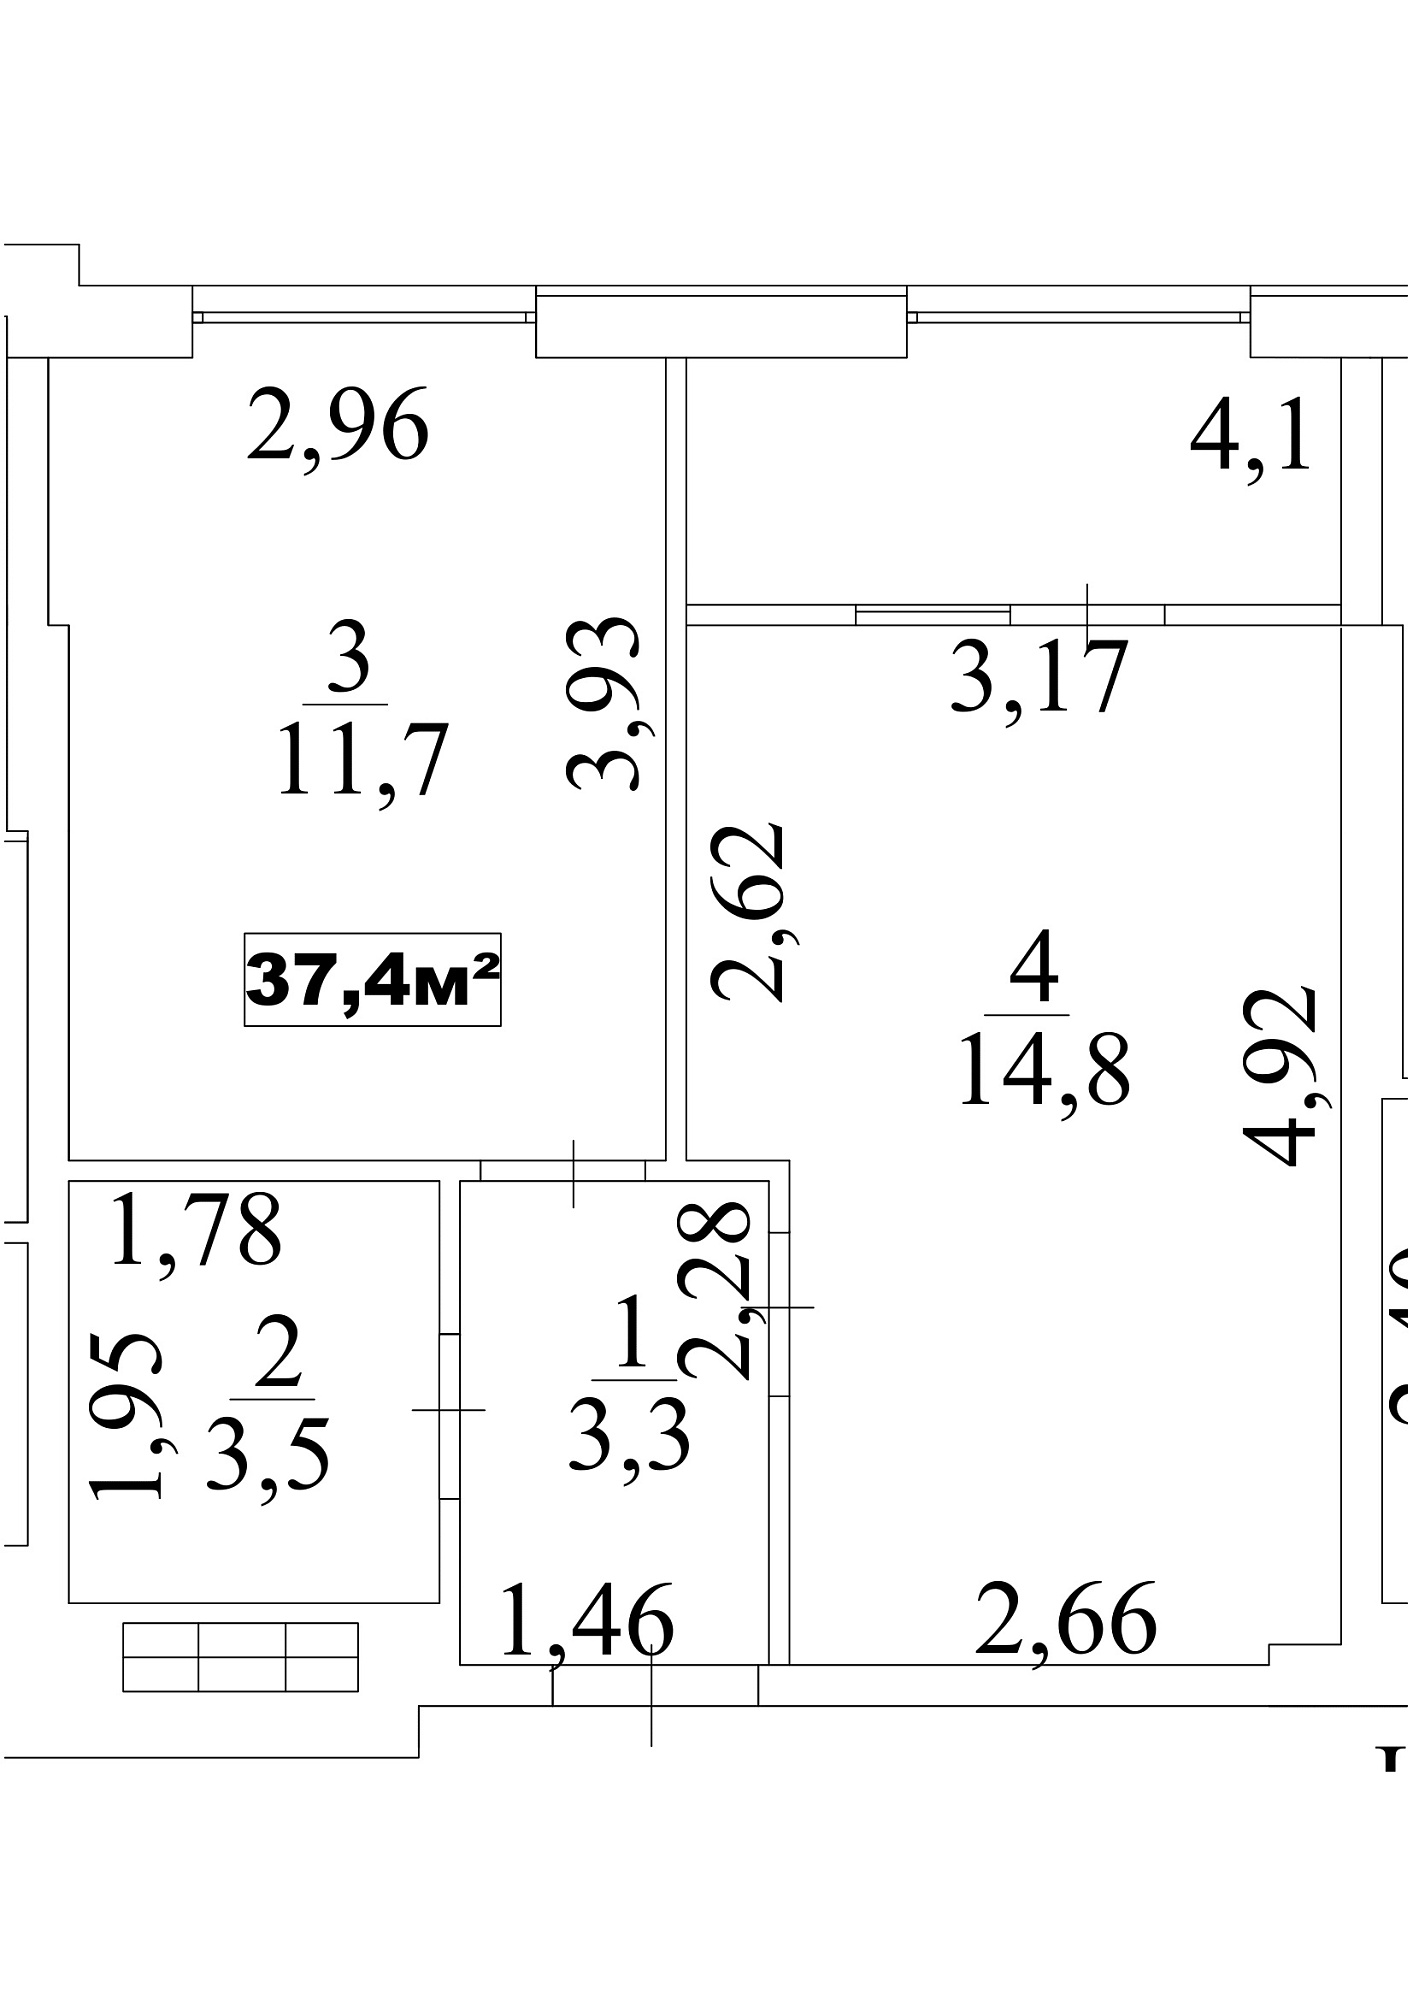 Планування 1-к квартира площею 37.4м2, AB-10-04/00033.